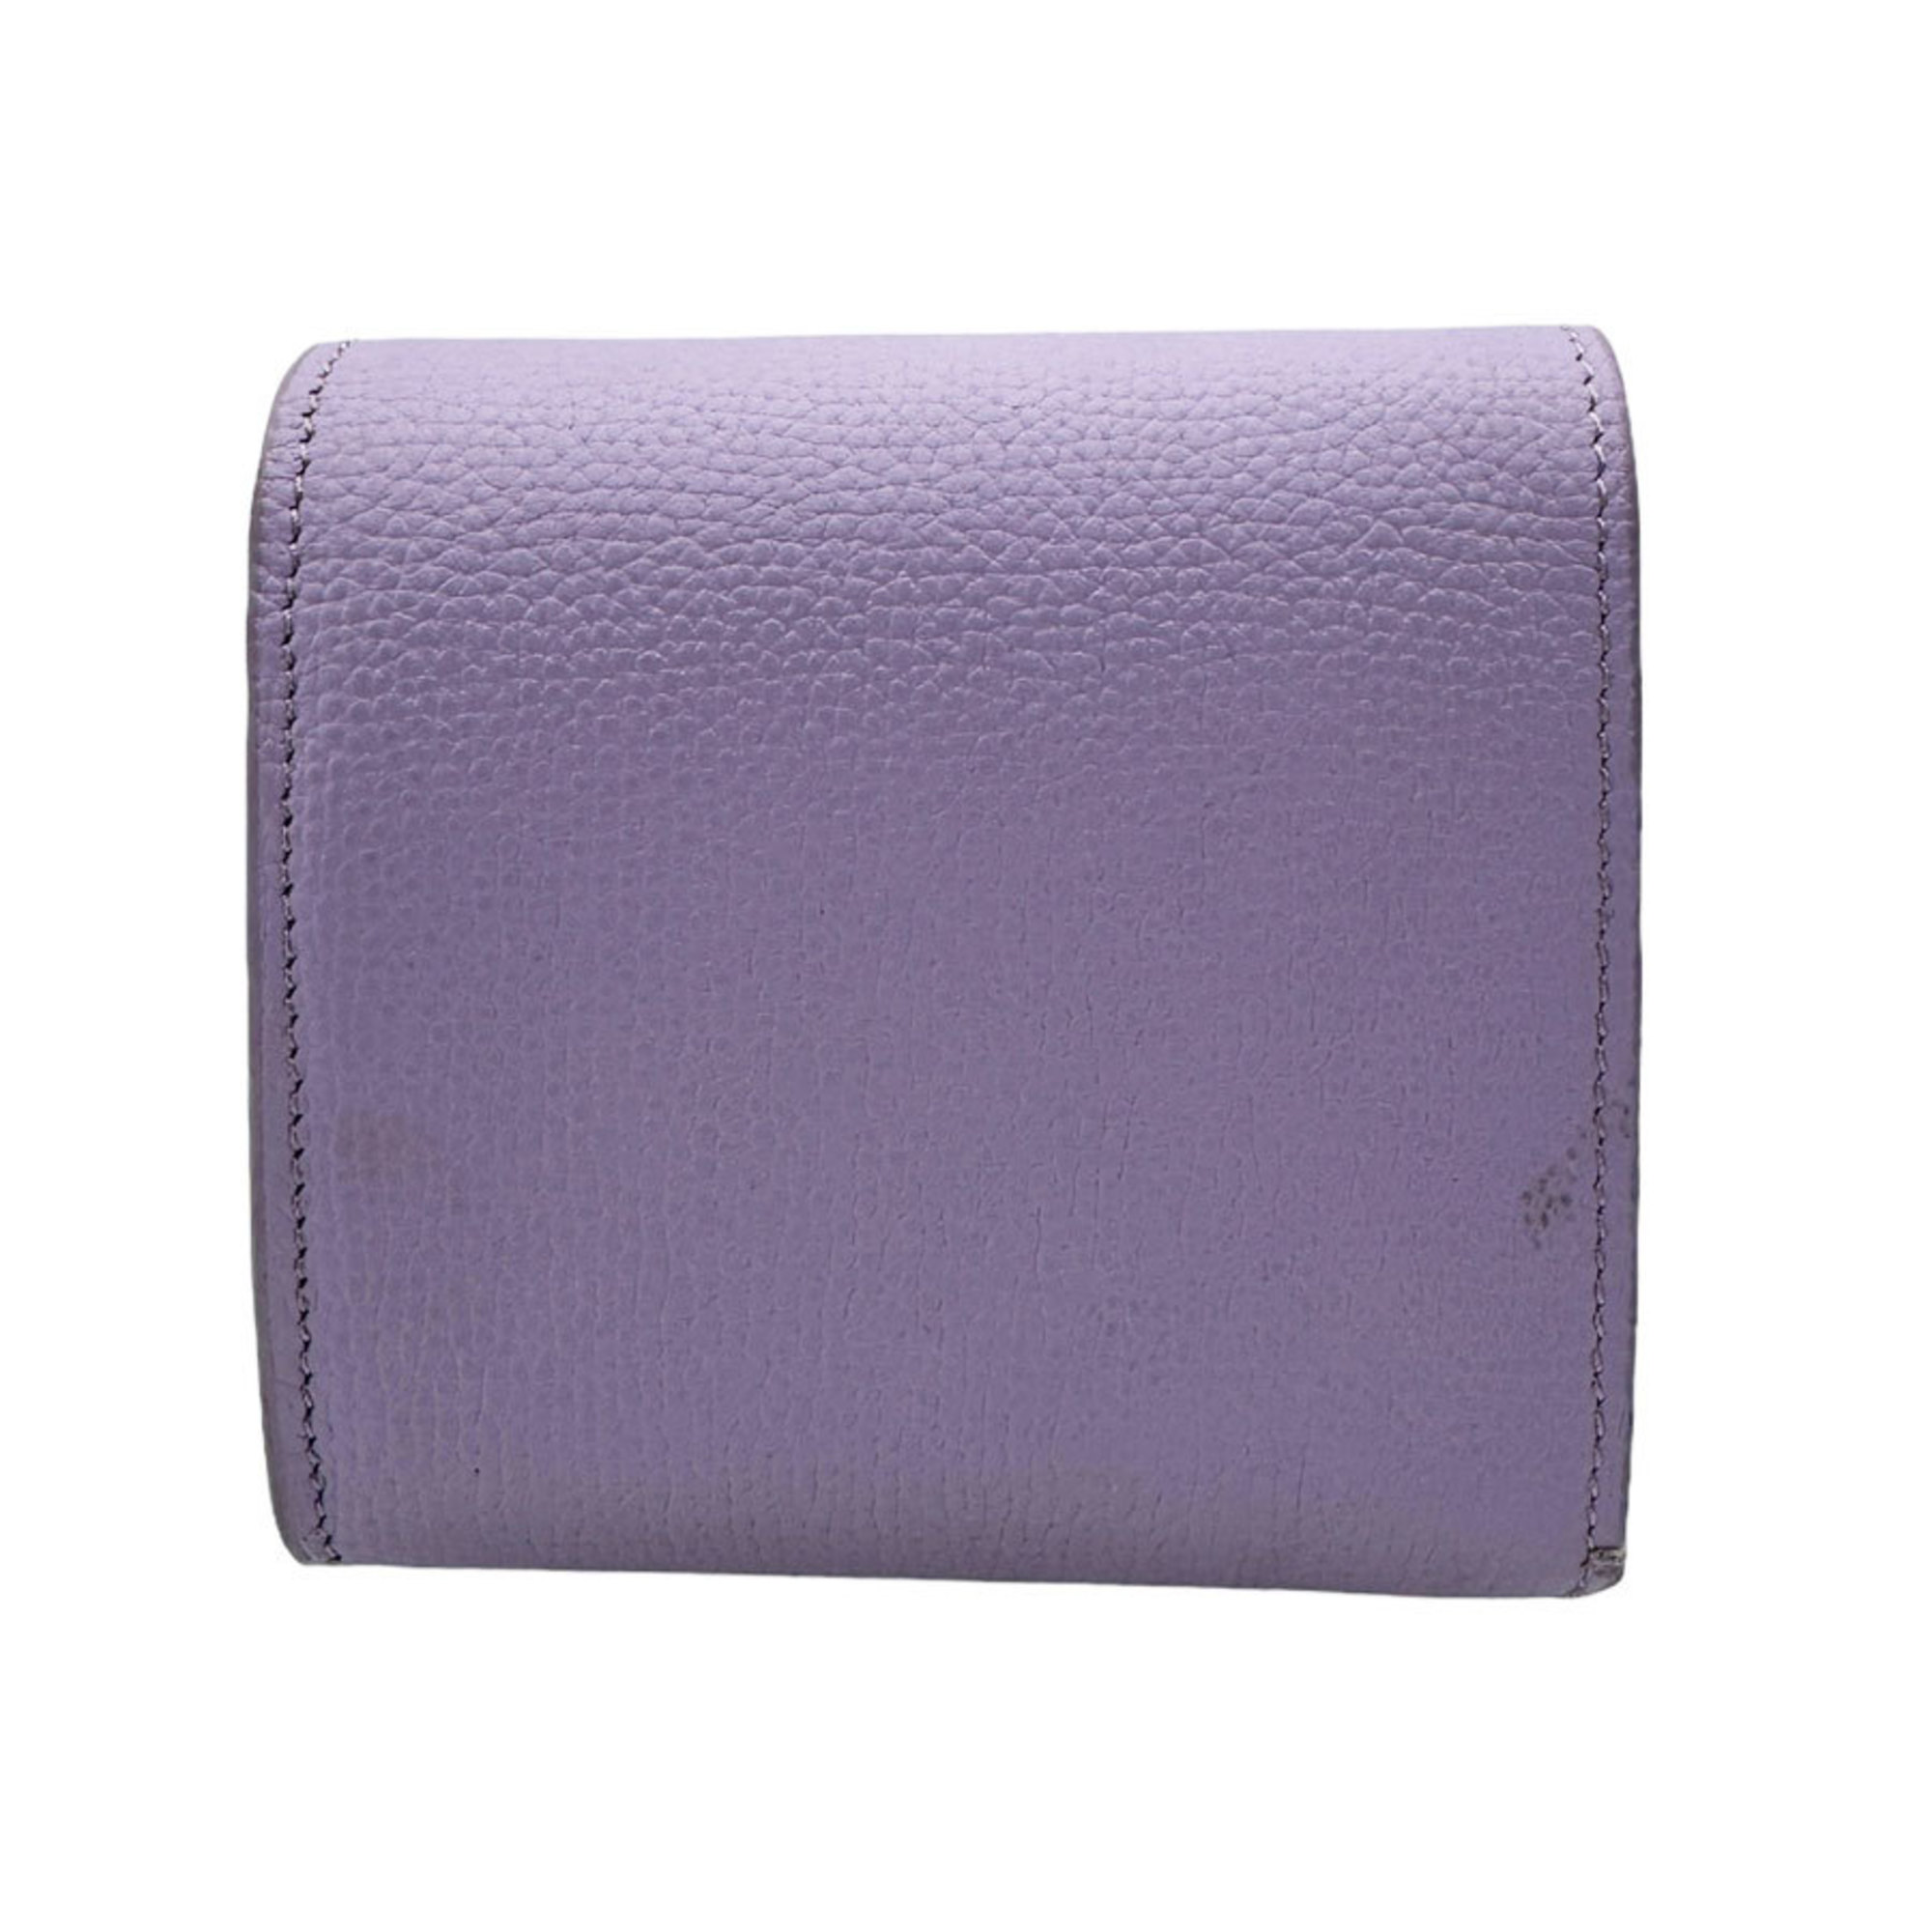 LOEWE Bifold Wallet Anagram Leather Light Purple Women's